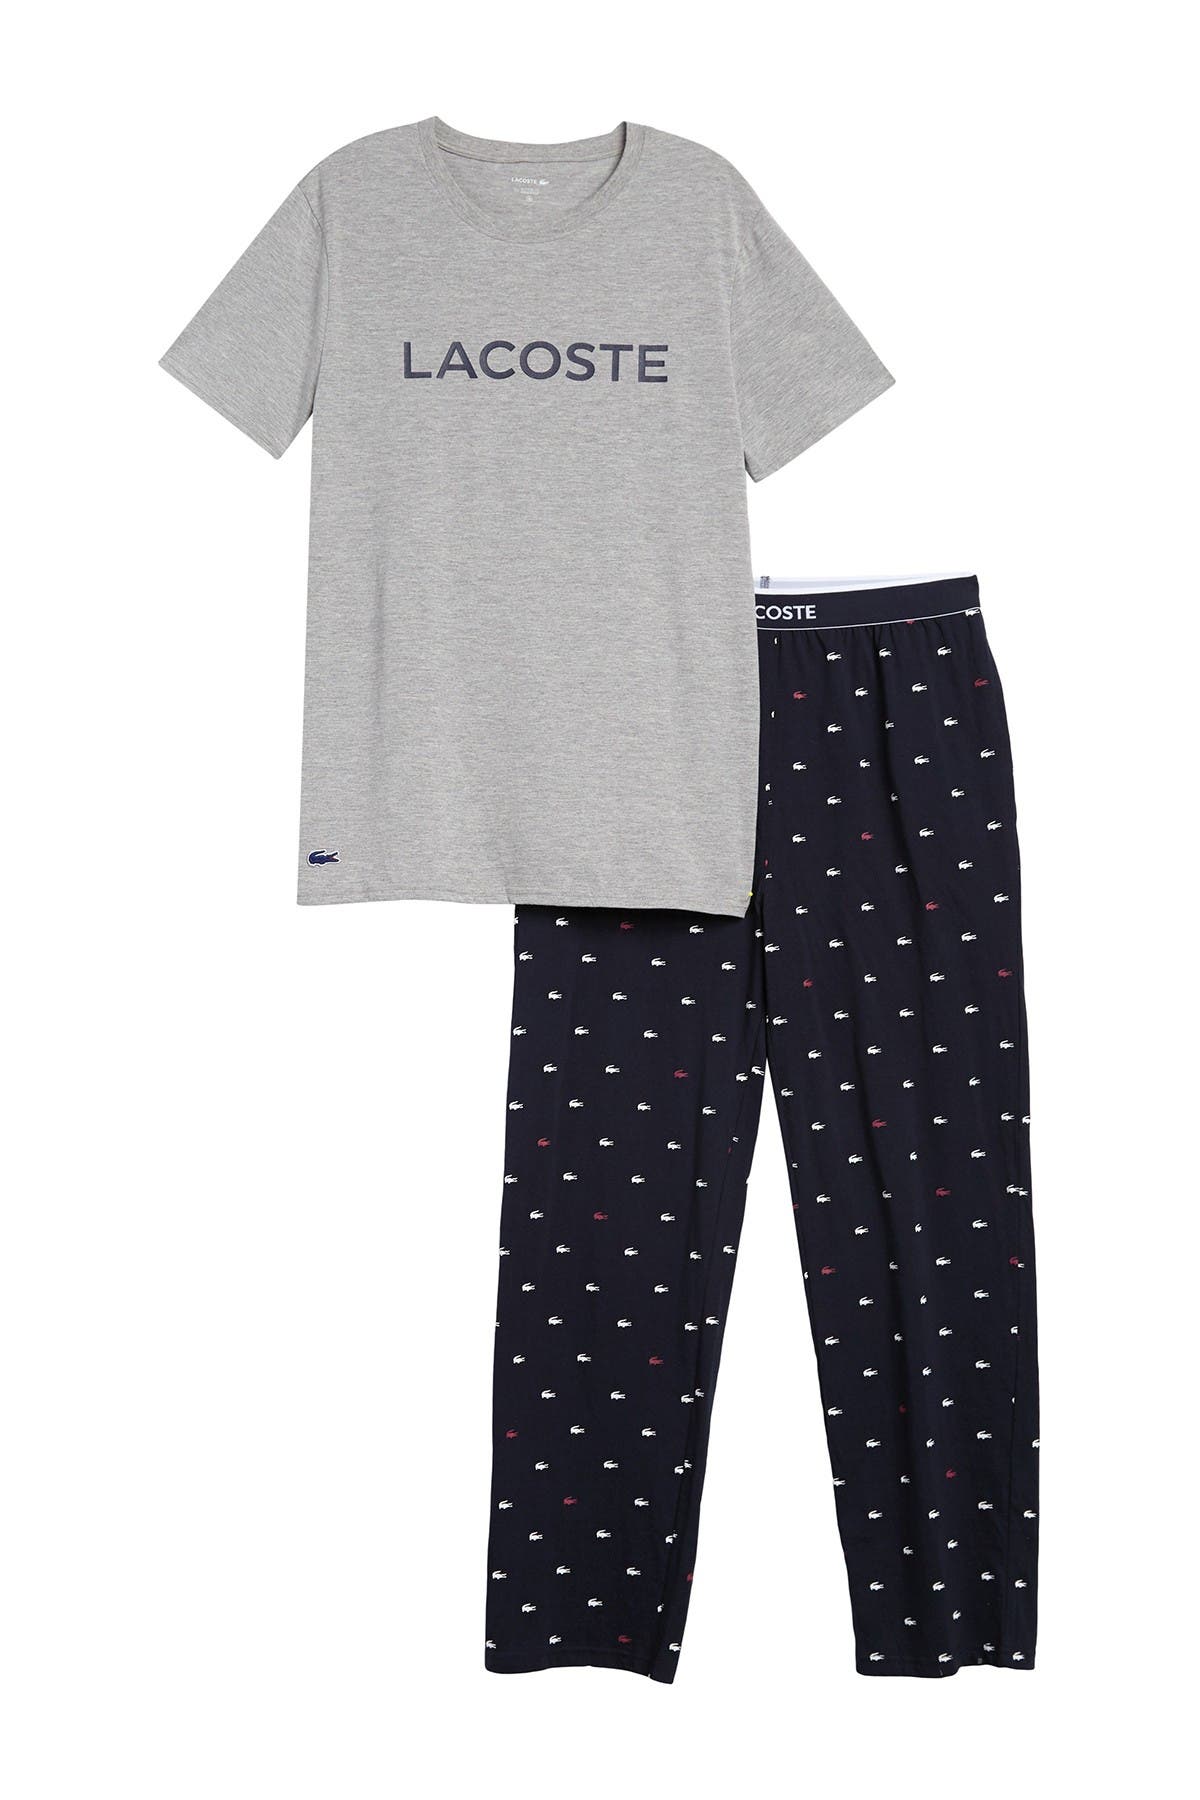 lacoste sleep pants